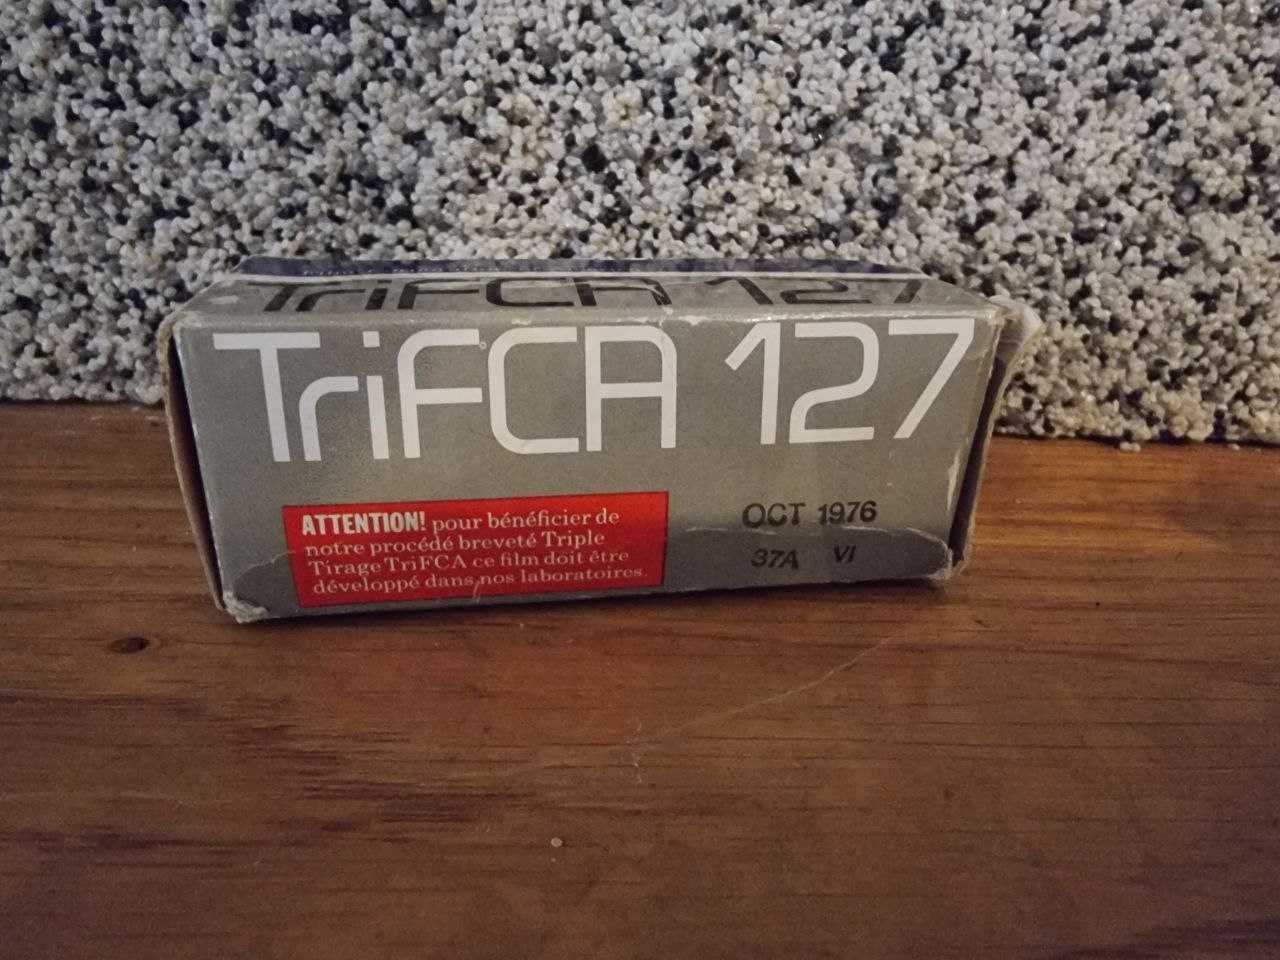 Pellicula Fotograficzna Trifca 127, Made in England